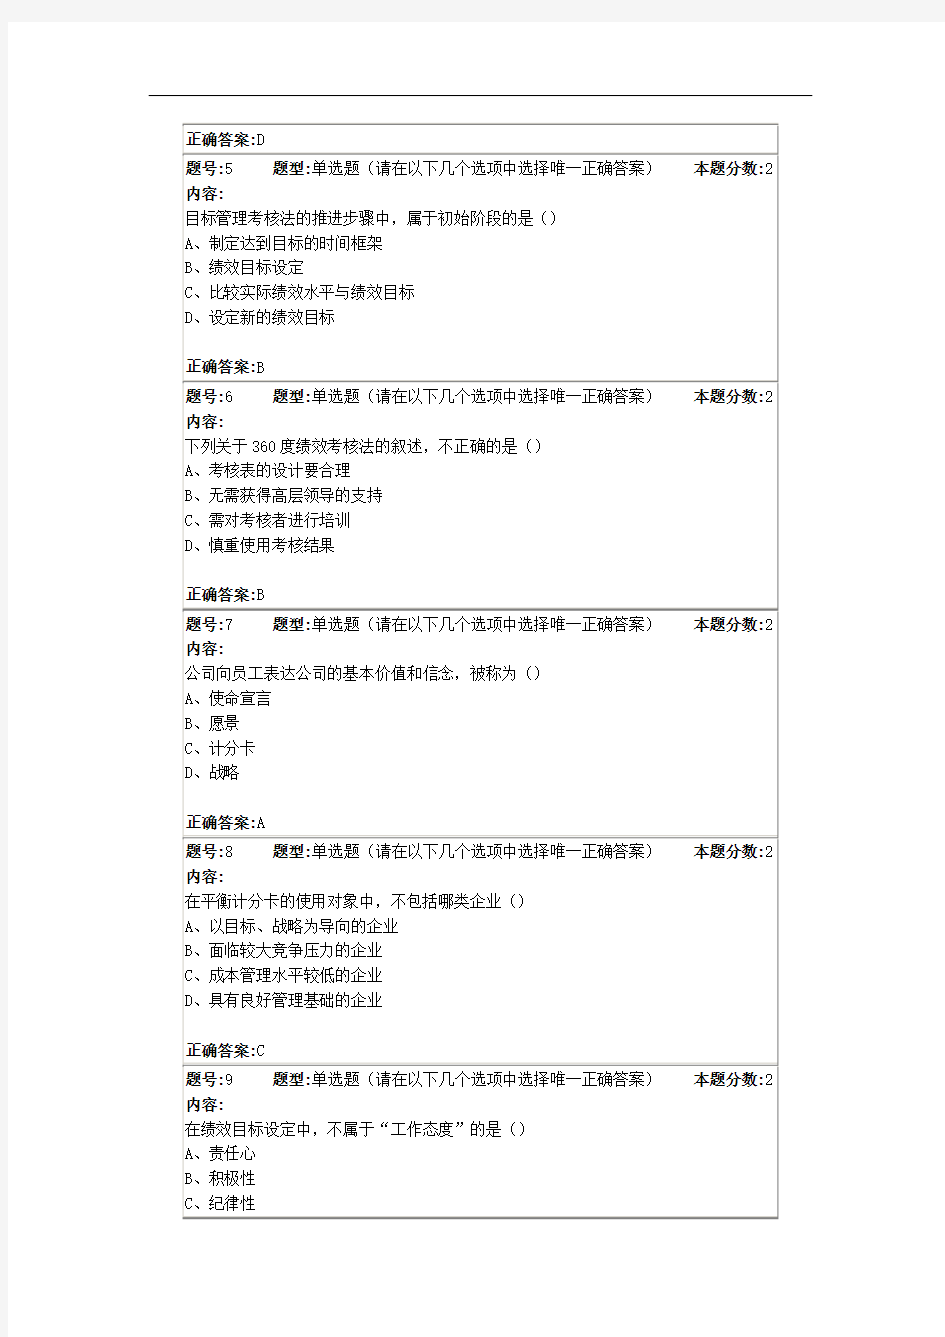 2015年南京大学网络学院绩效管理第二次作业(答案最全版本)解读